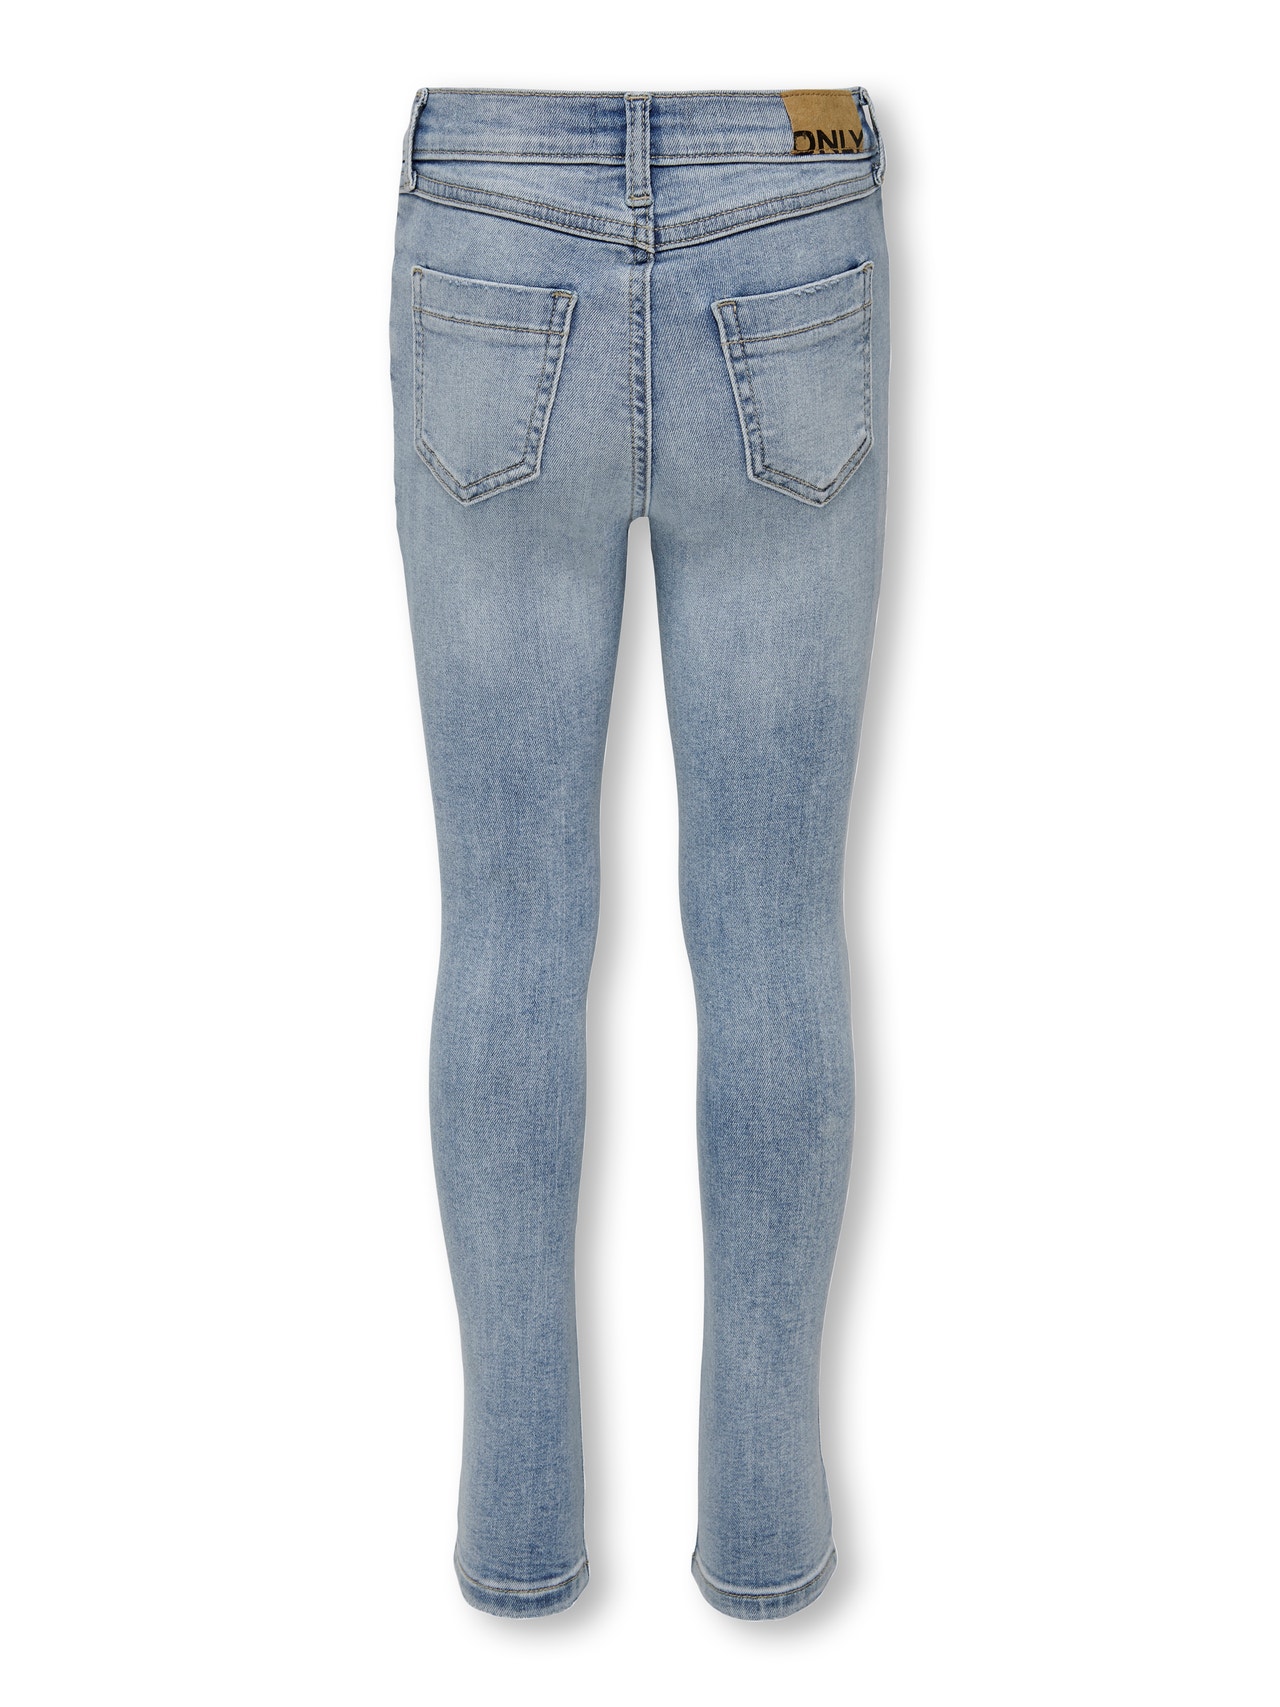 ONLY Jeans Skinny Fit -Light Blue Denim - 15281005